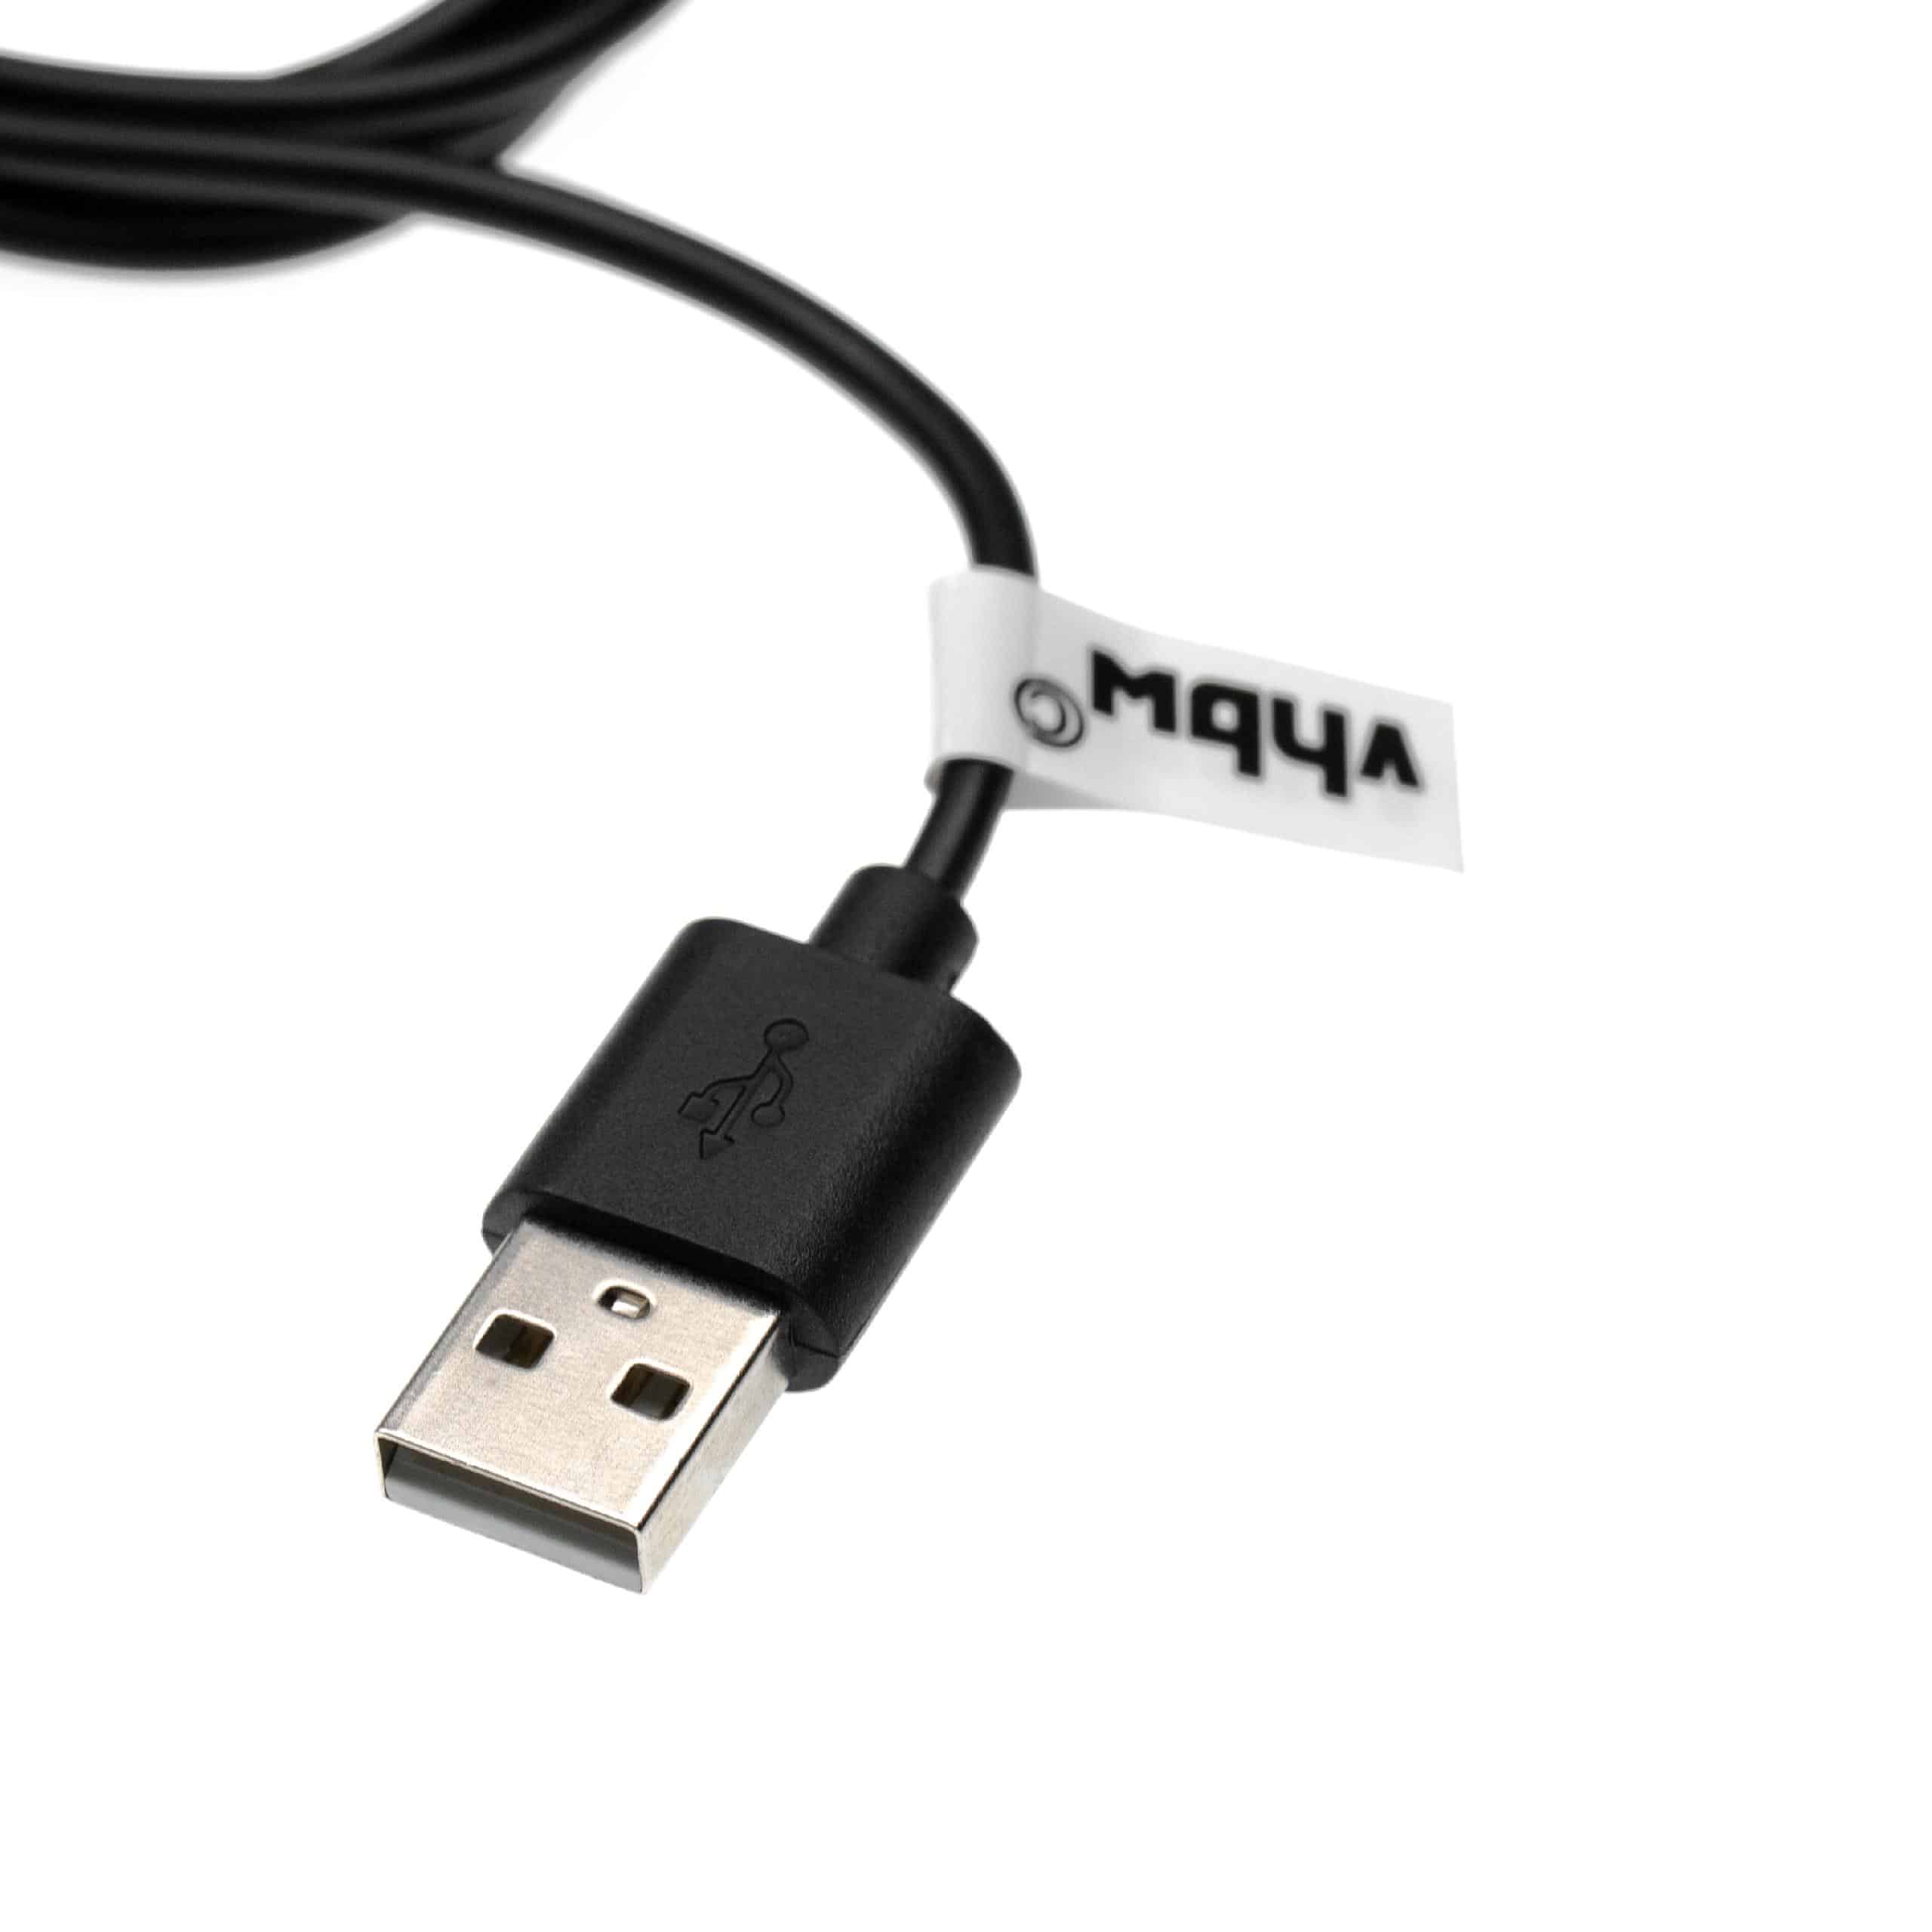 Ladekabel passend für Suunto 3 Fitness - 96 cm Kabel, USB-Stecker